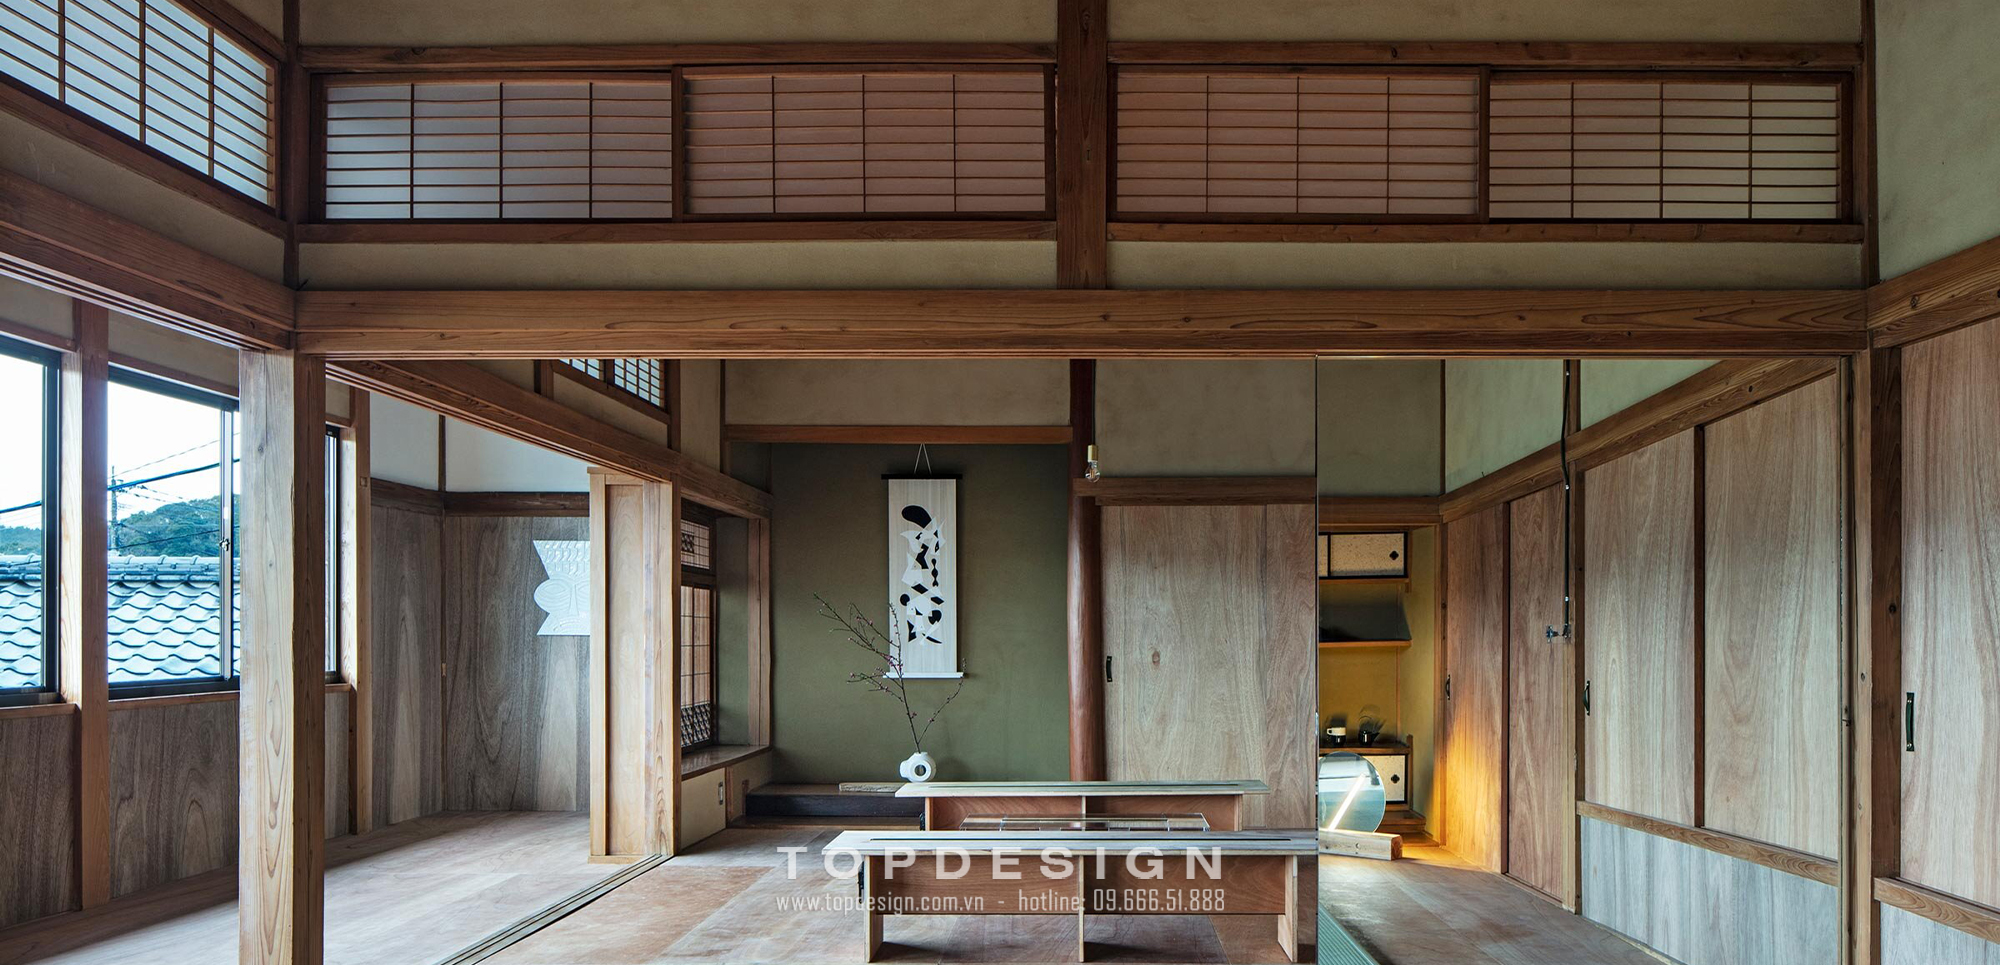 Thiết kế nội thất biệt thự kiểu Nhật_TOPDESIGN 15